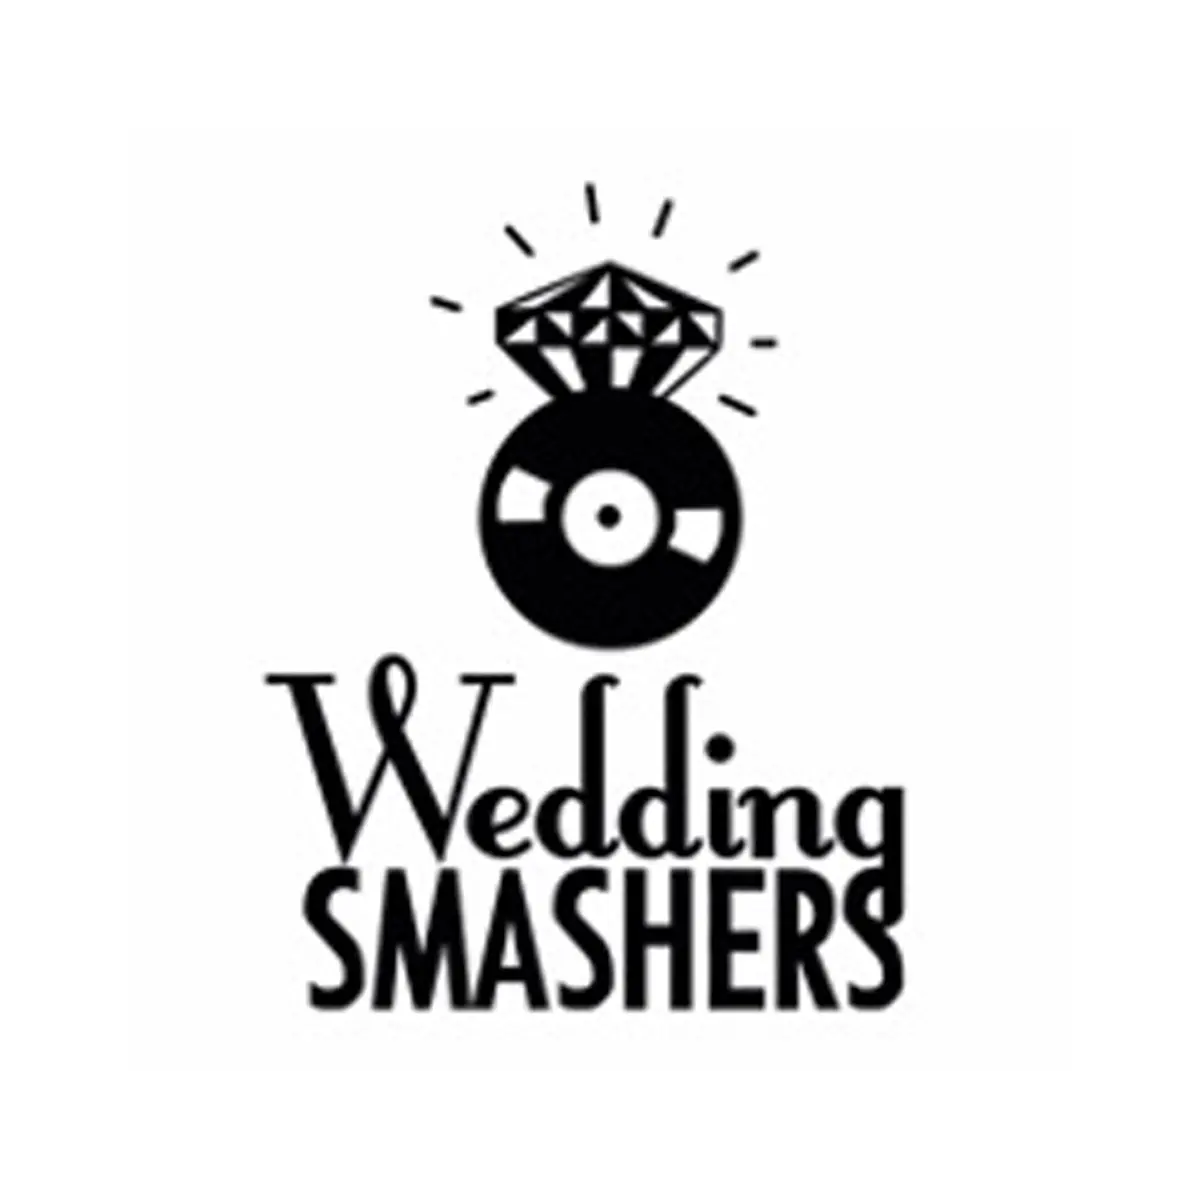 Wedding Smashers - Logo